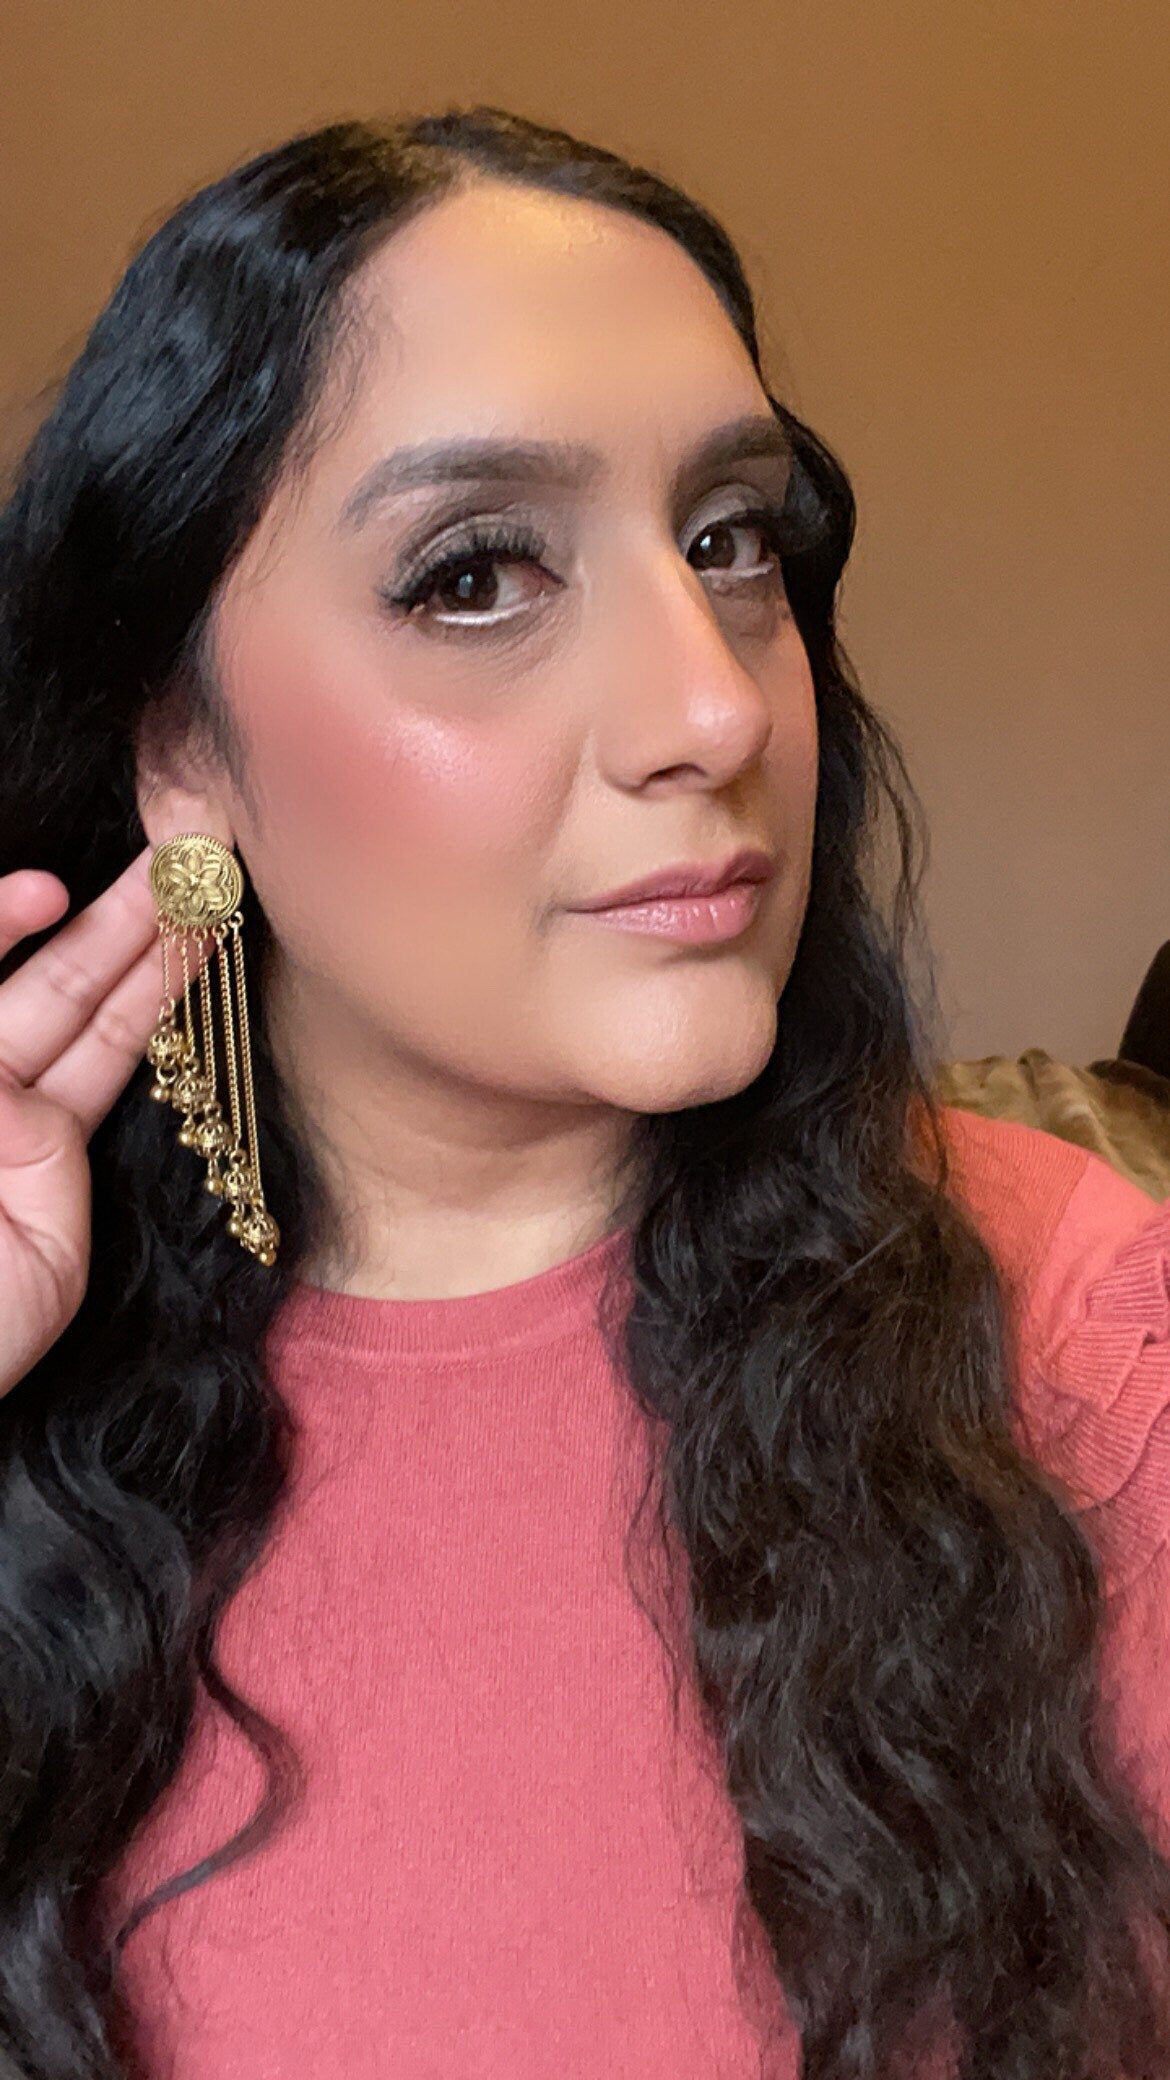 Antique Jhumka, Indian Earrings, Pakistani Earrings, Jhumka, Desi Earrings, Afghan Ethnic Tribal Boho Gypsy Earrings, Indian jewellery